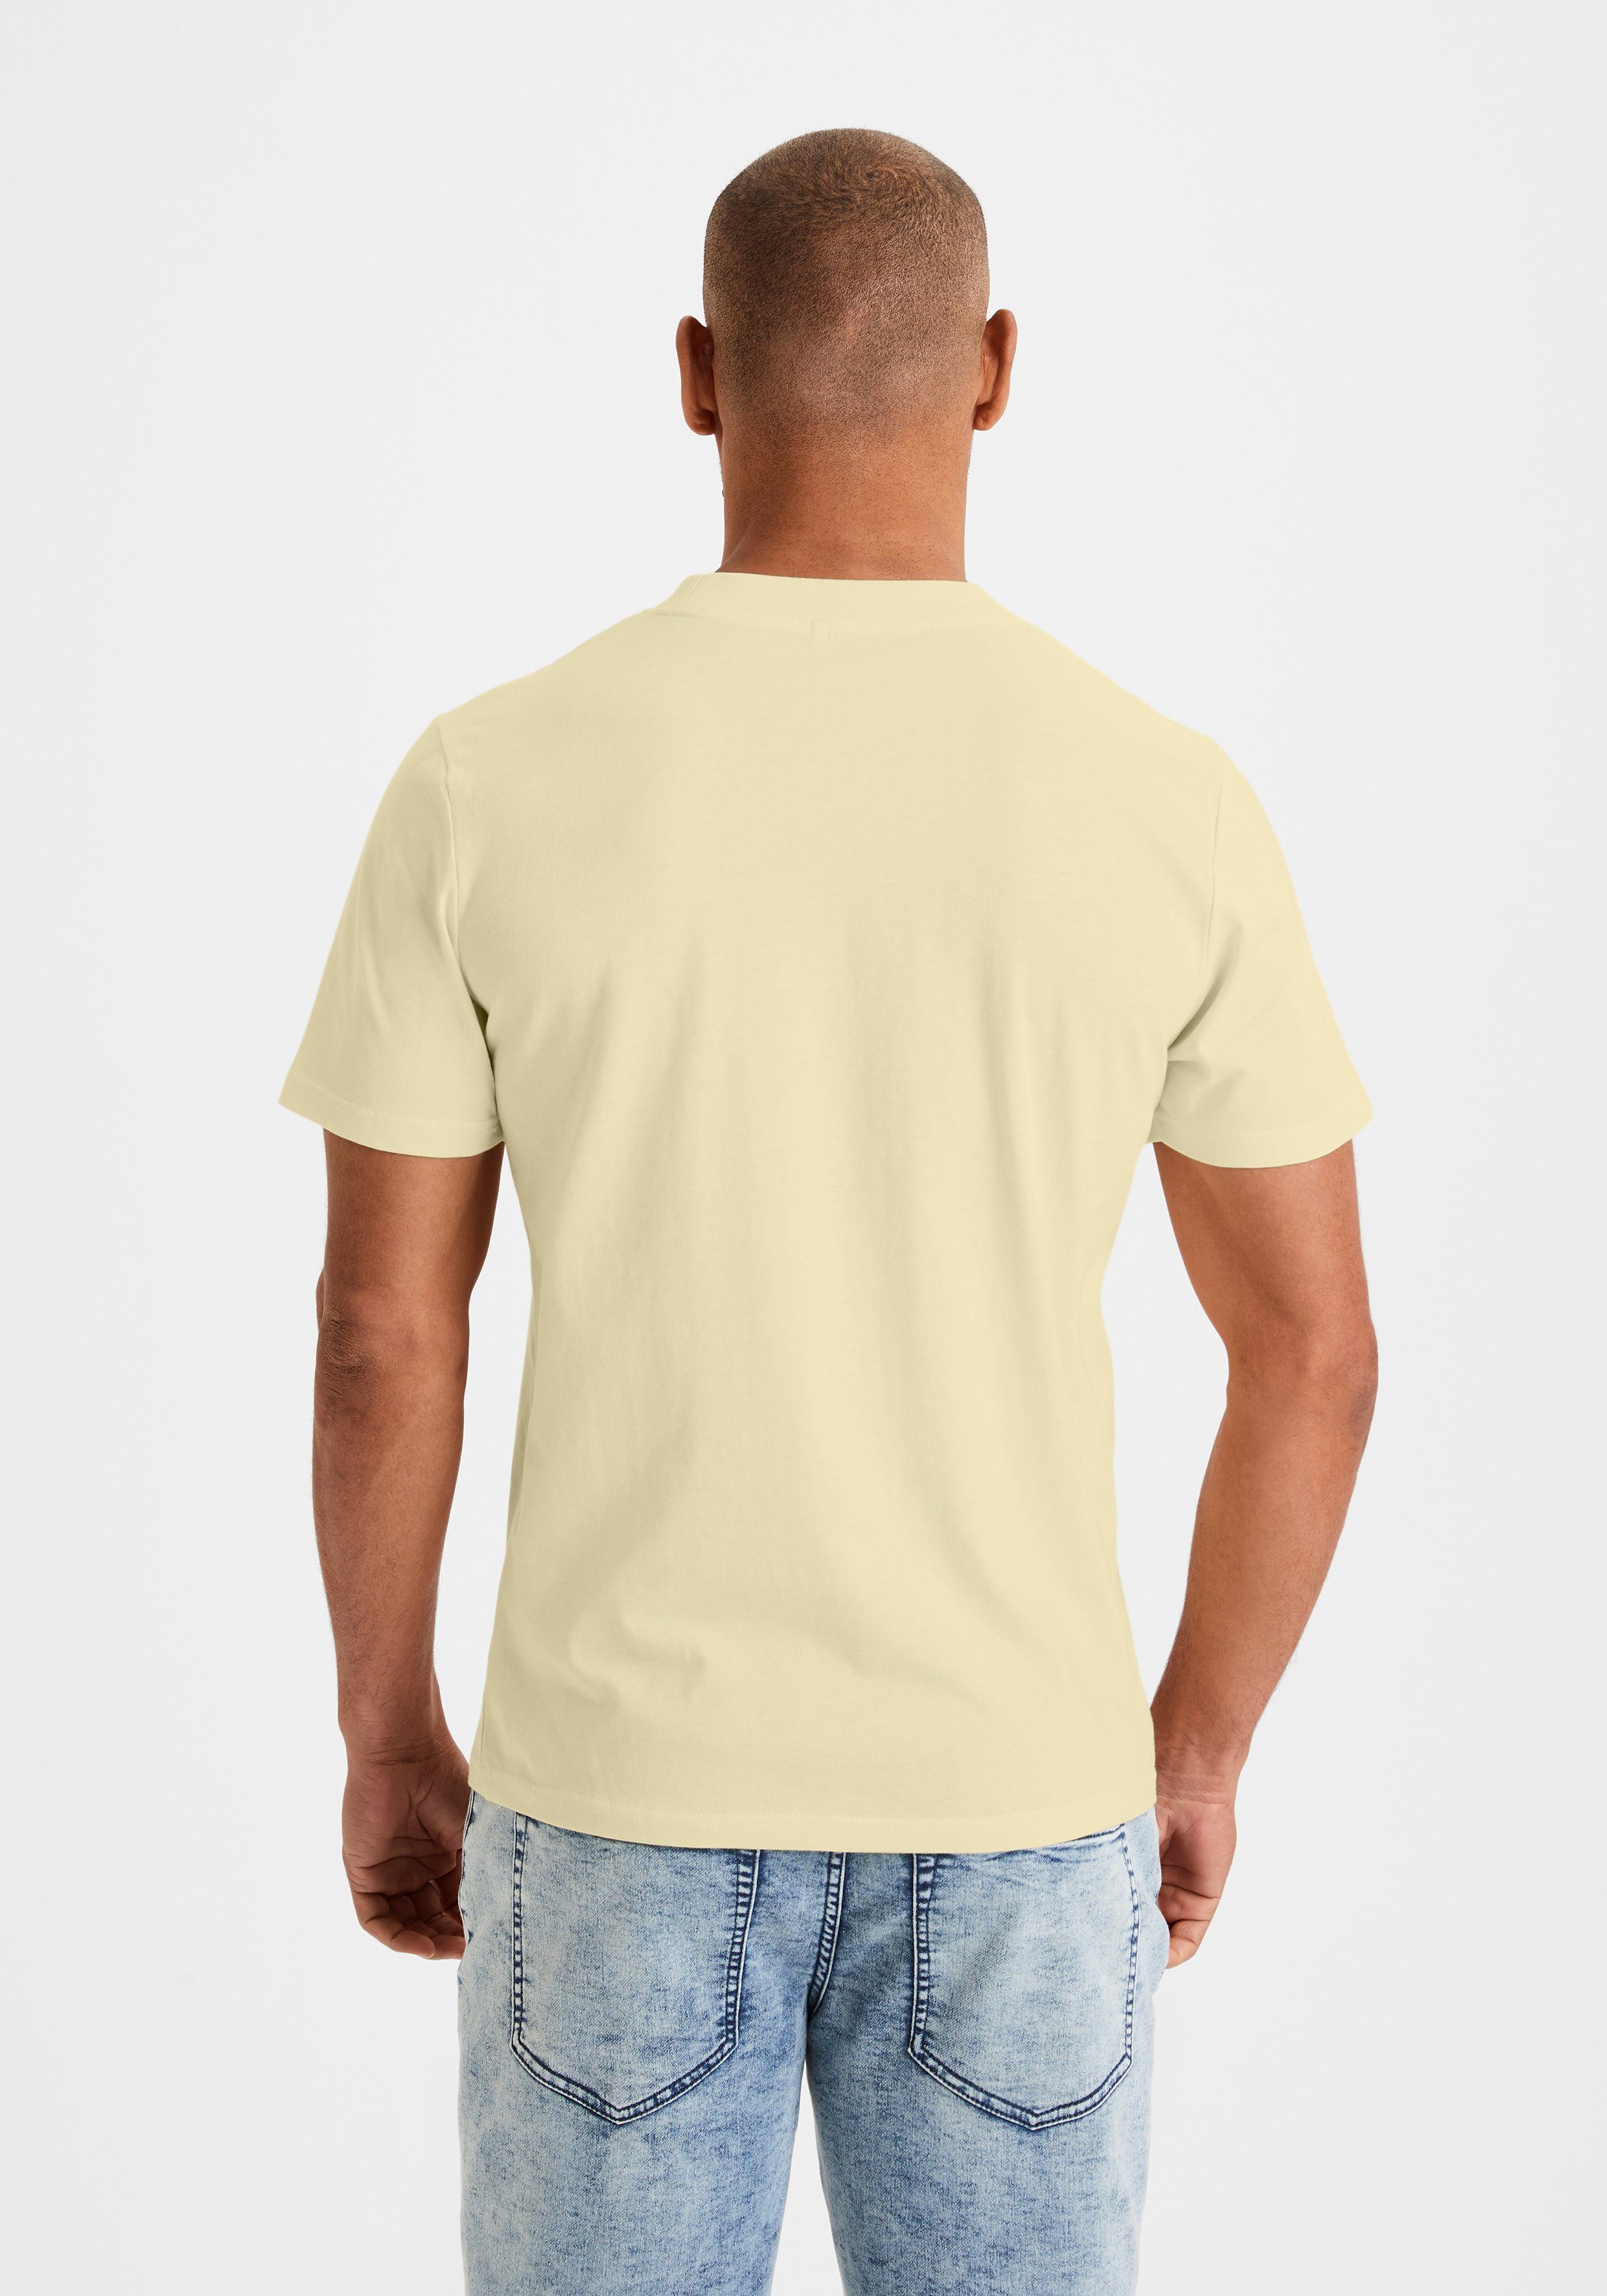 ein klassischer Must-Have koralle KangaROOS / (2er-Pack) in T-Shirt gelb Form